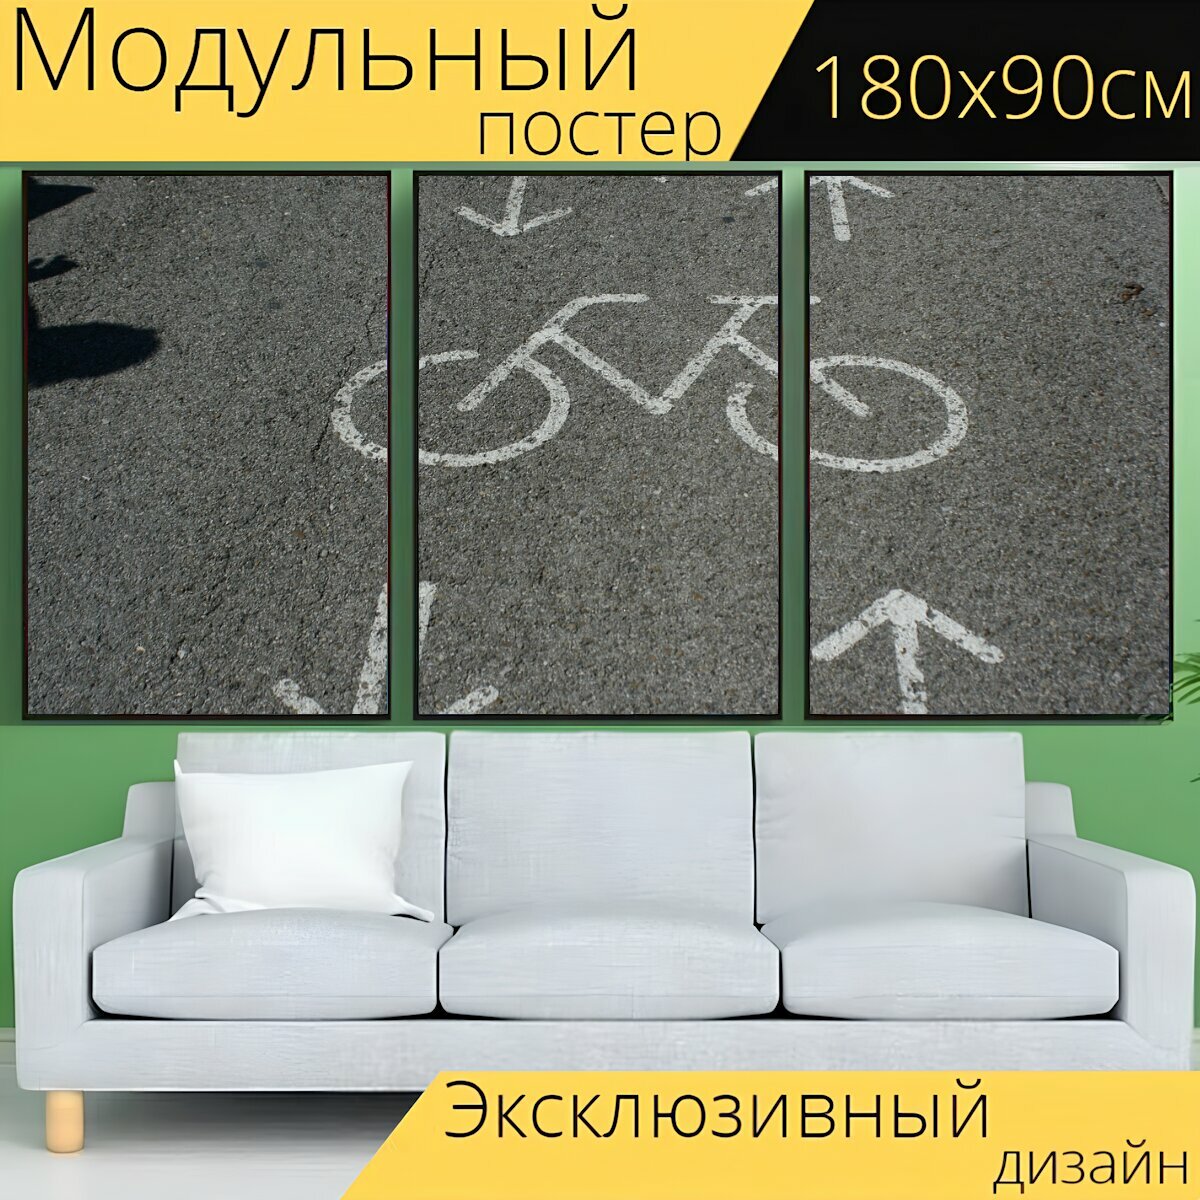 Модульный постер "Асфальт, велосипедная дорожка, велосипед" 180 x 90 см. для интерьера